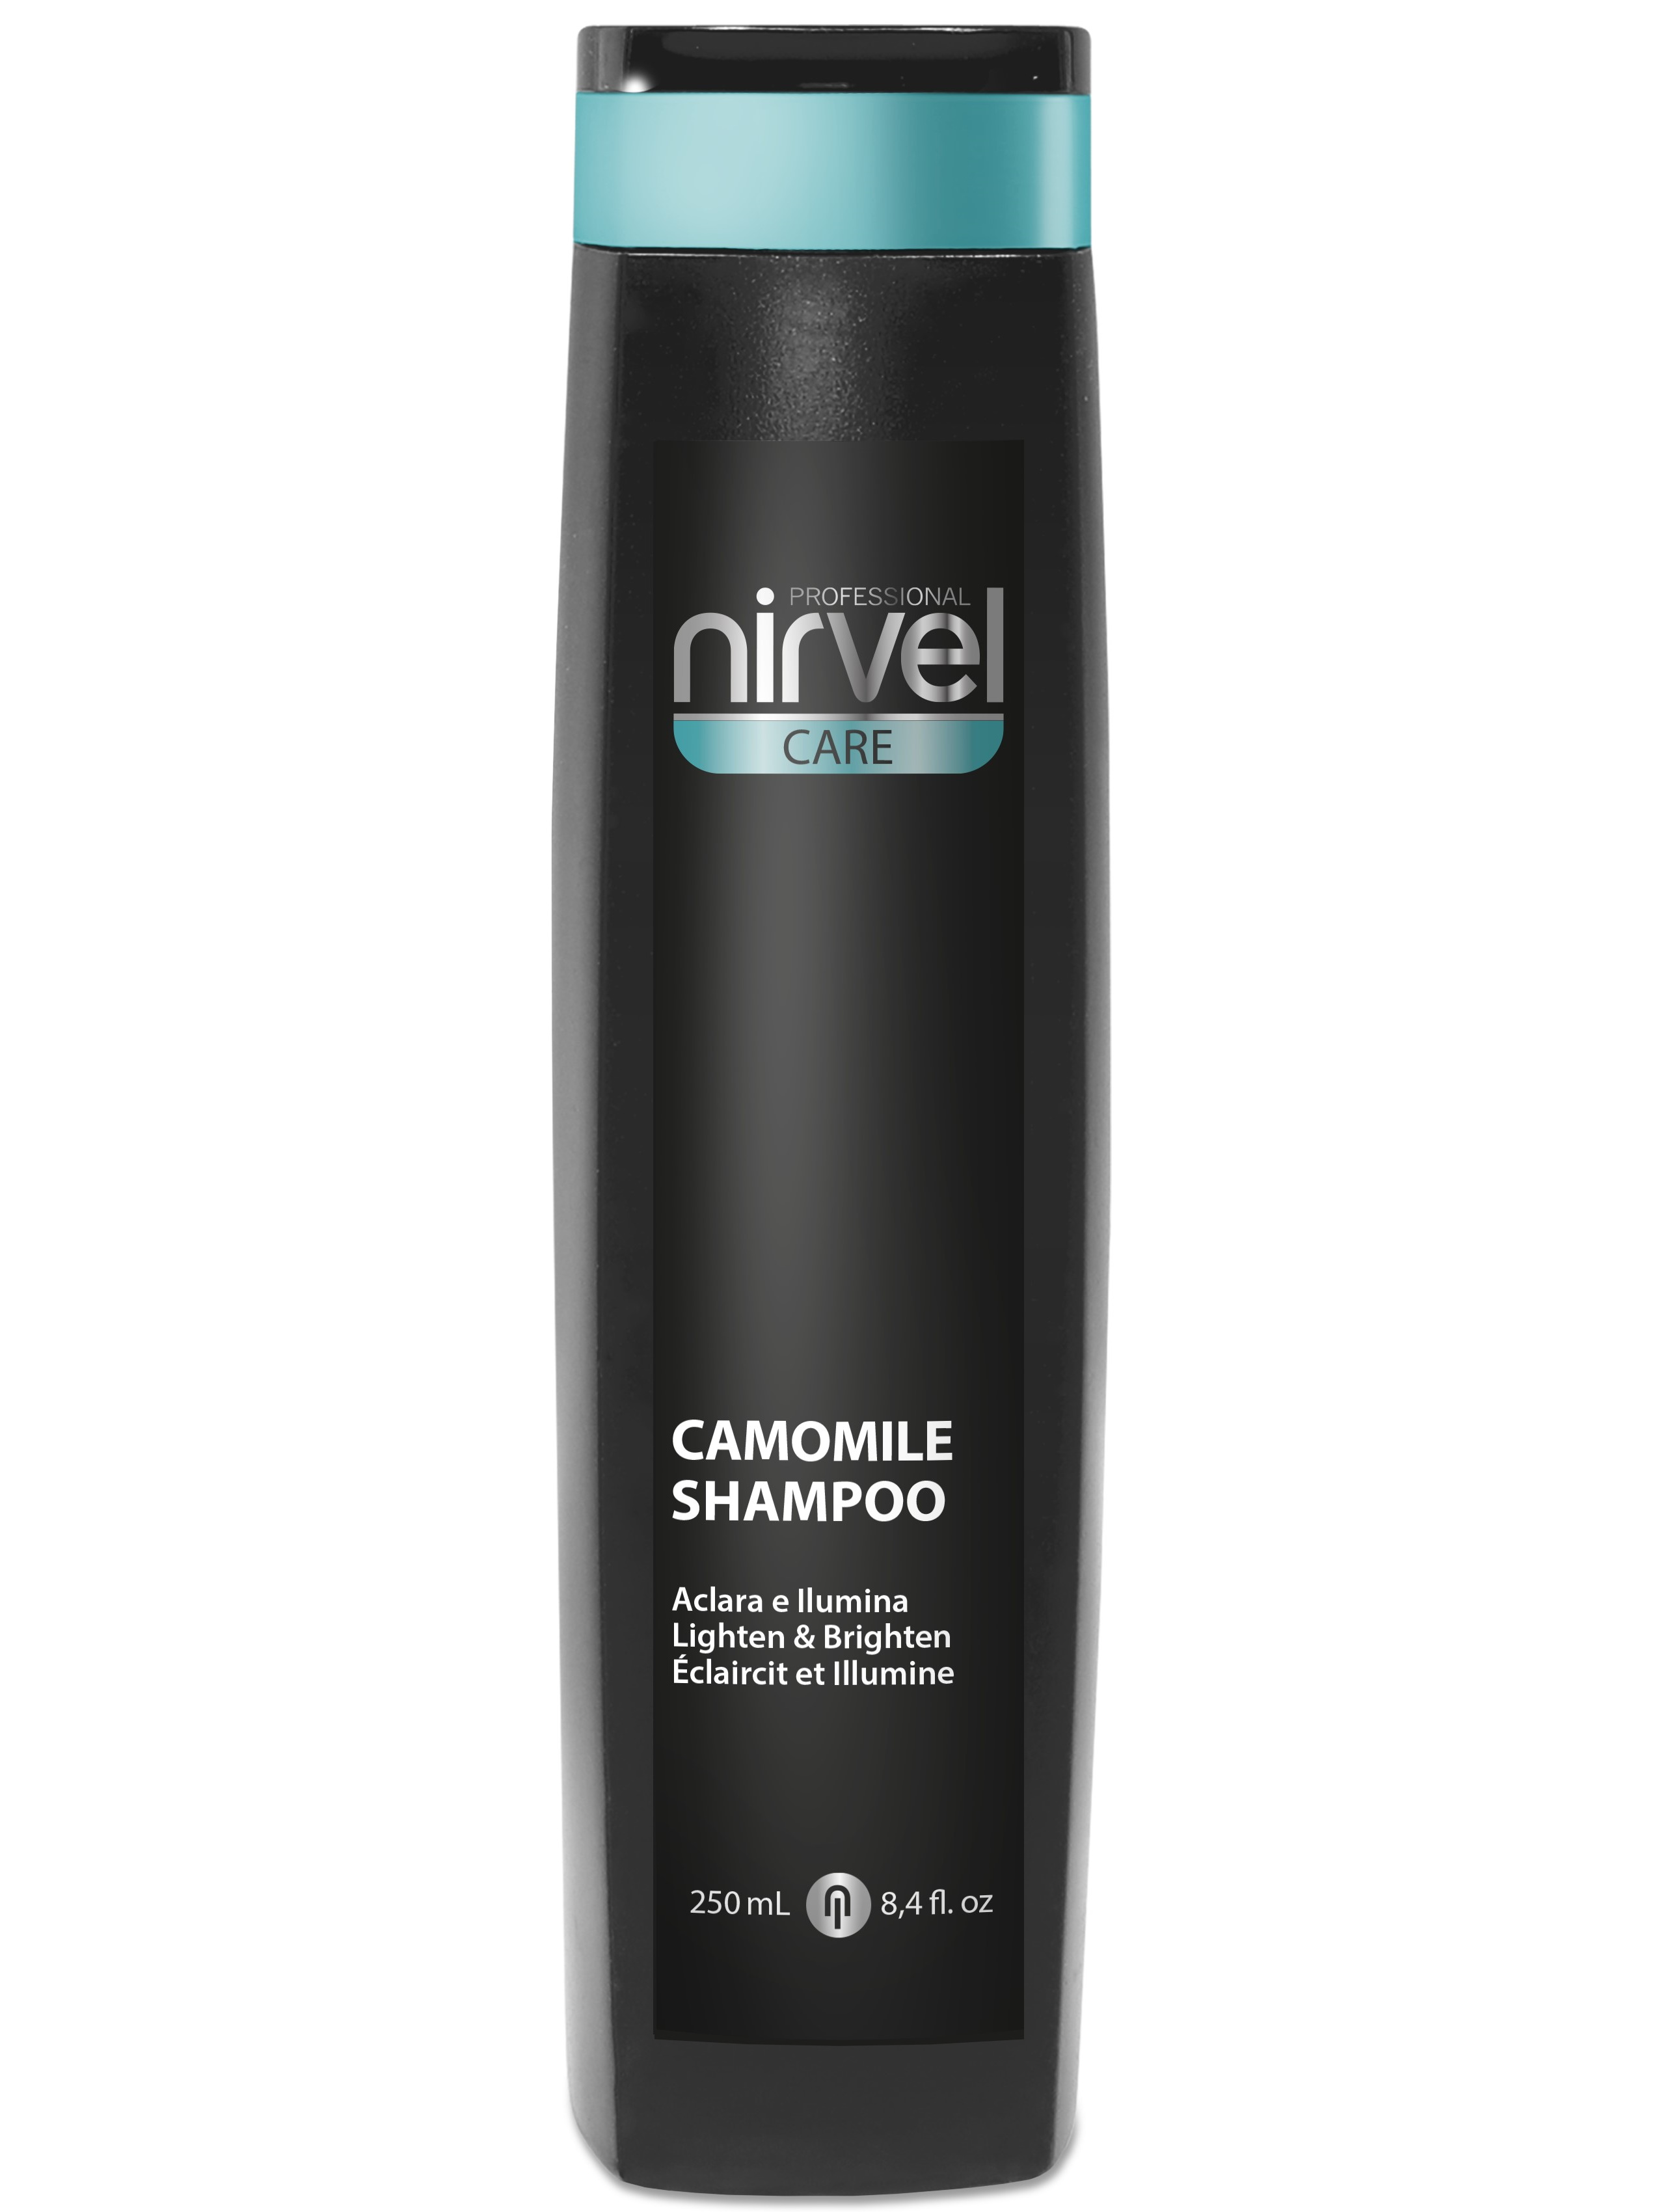 Купить Шампунь NIRVEL PROFESSIONAL CARE для блондированных волос camomile 250 мл